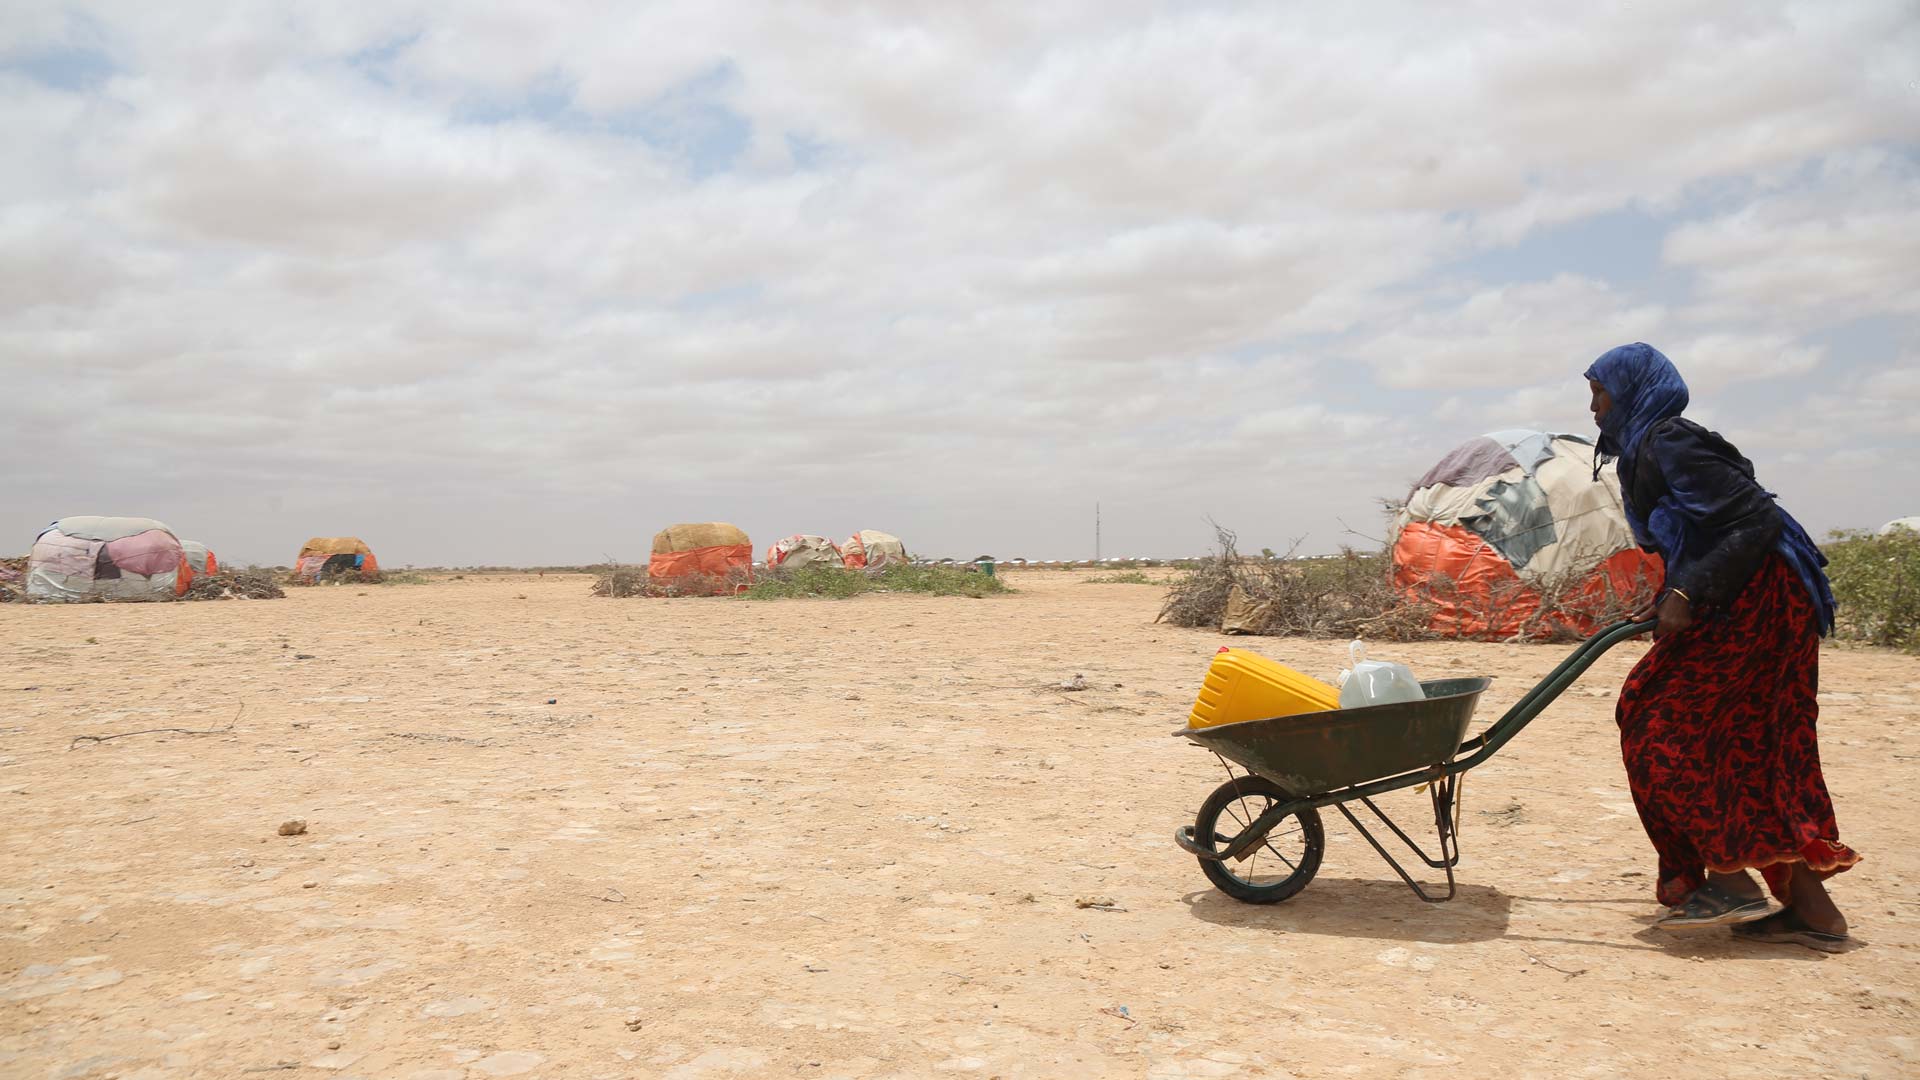 La sequía amenaza la vida de 15 millones de personas en el Cuerno de África